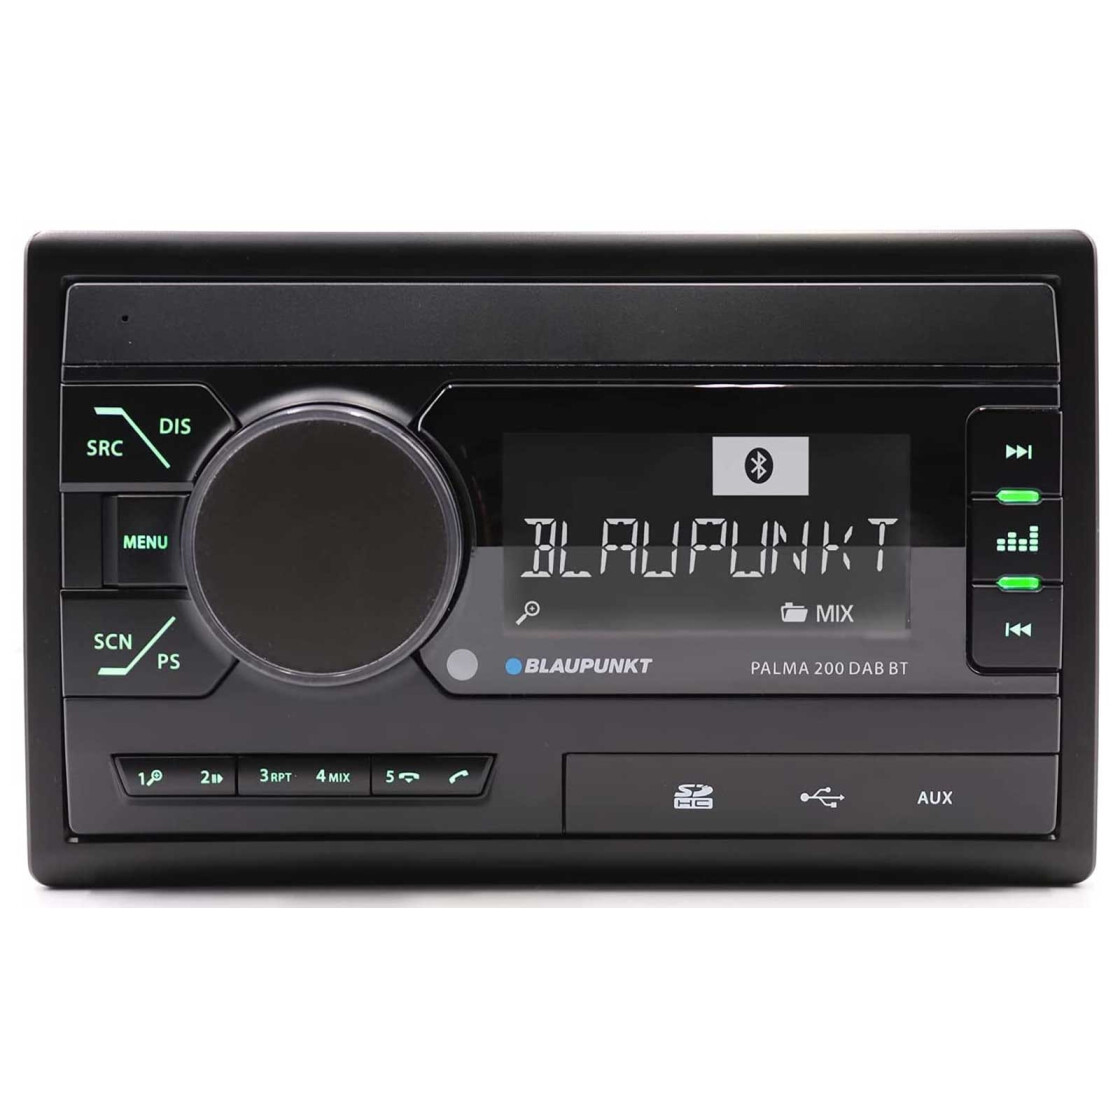 Blaupunkt Palma 200 DAB BT Doppel-DIN MP3 Autoradio mit DAB